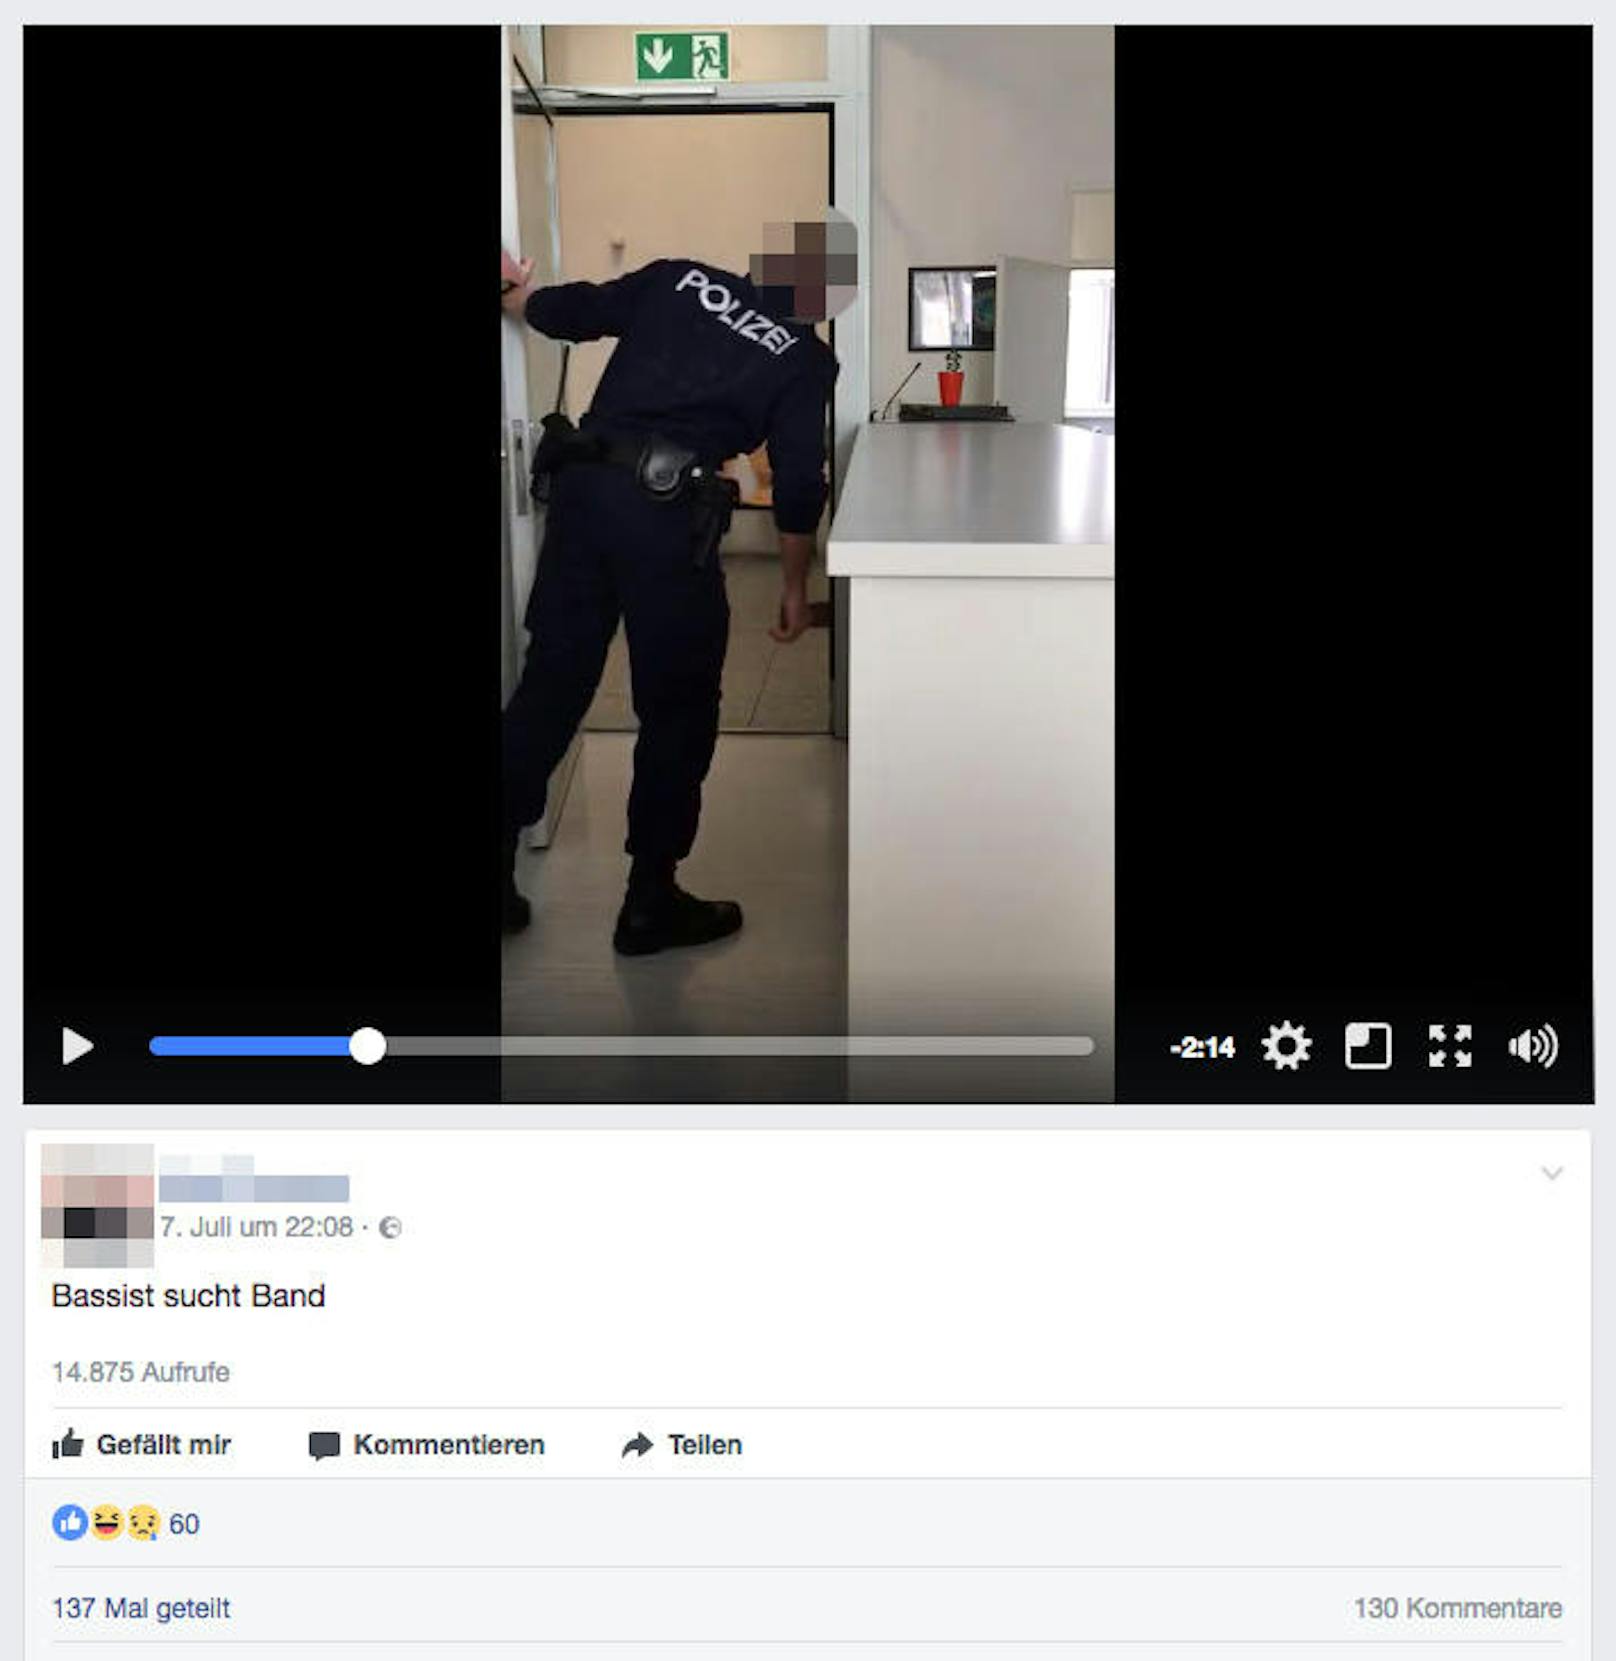 Steyrer Polizisten stellen in Video offenbar verwirrten Mann bloß.